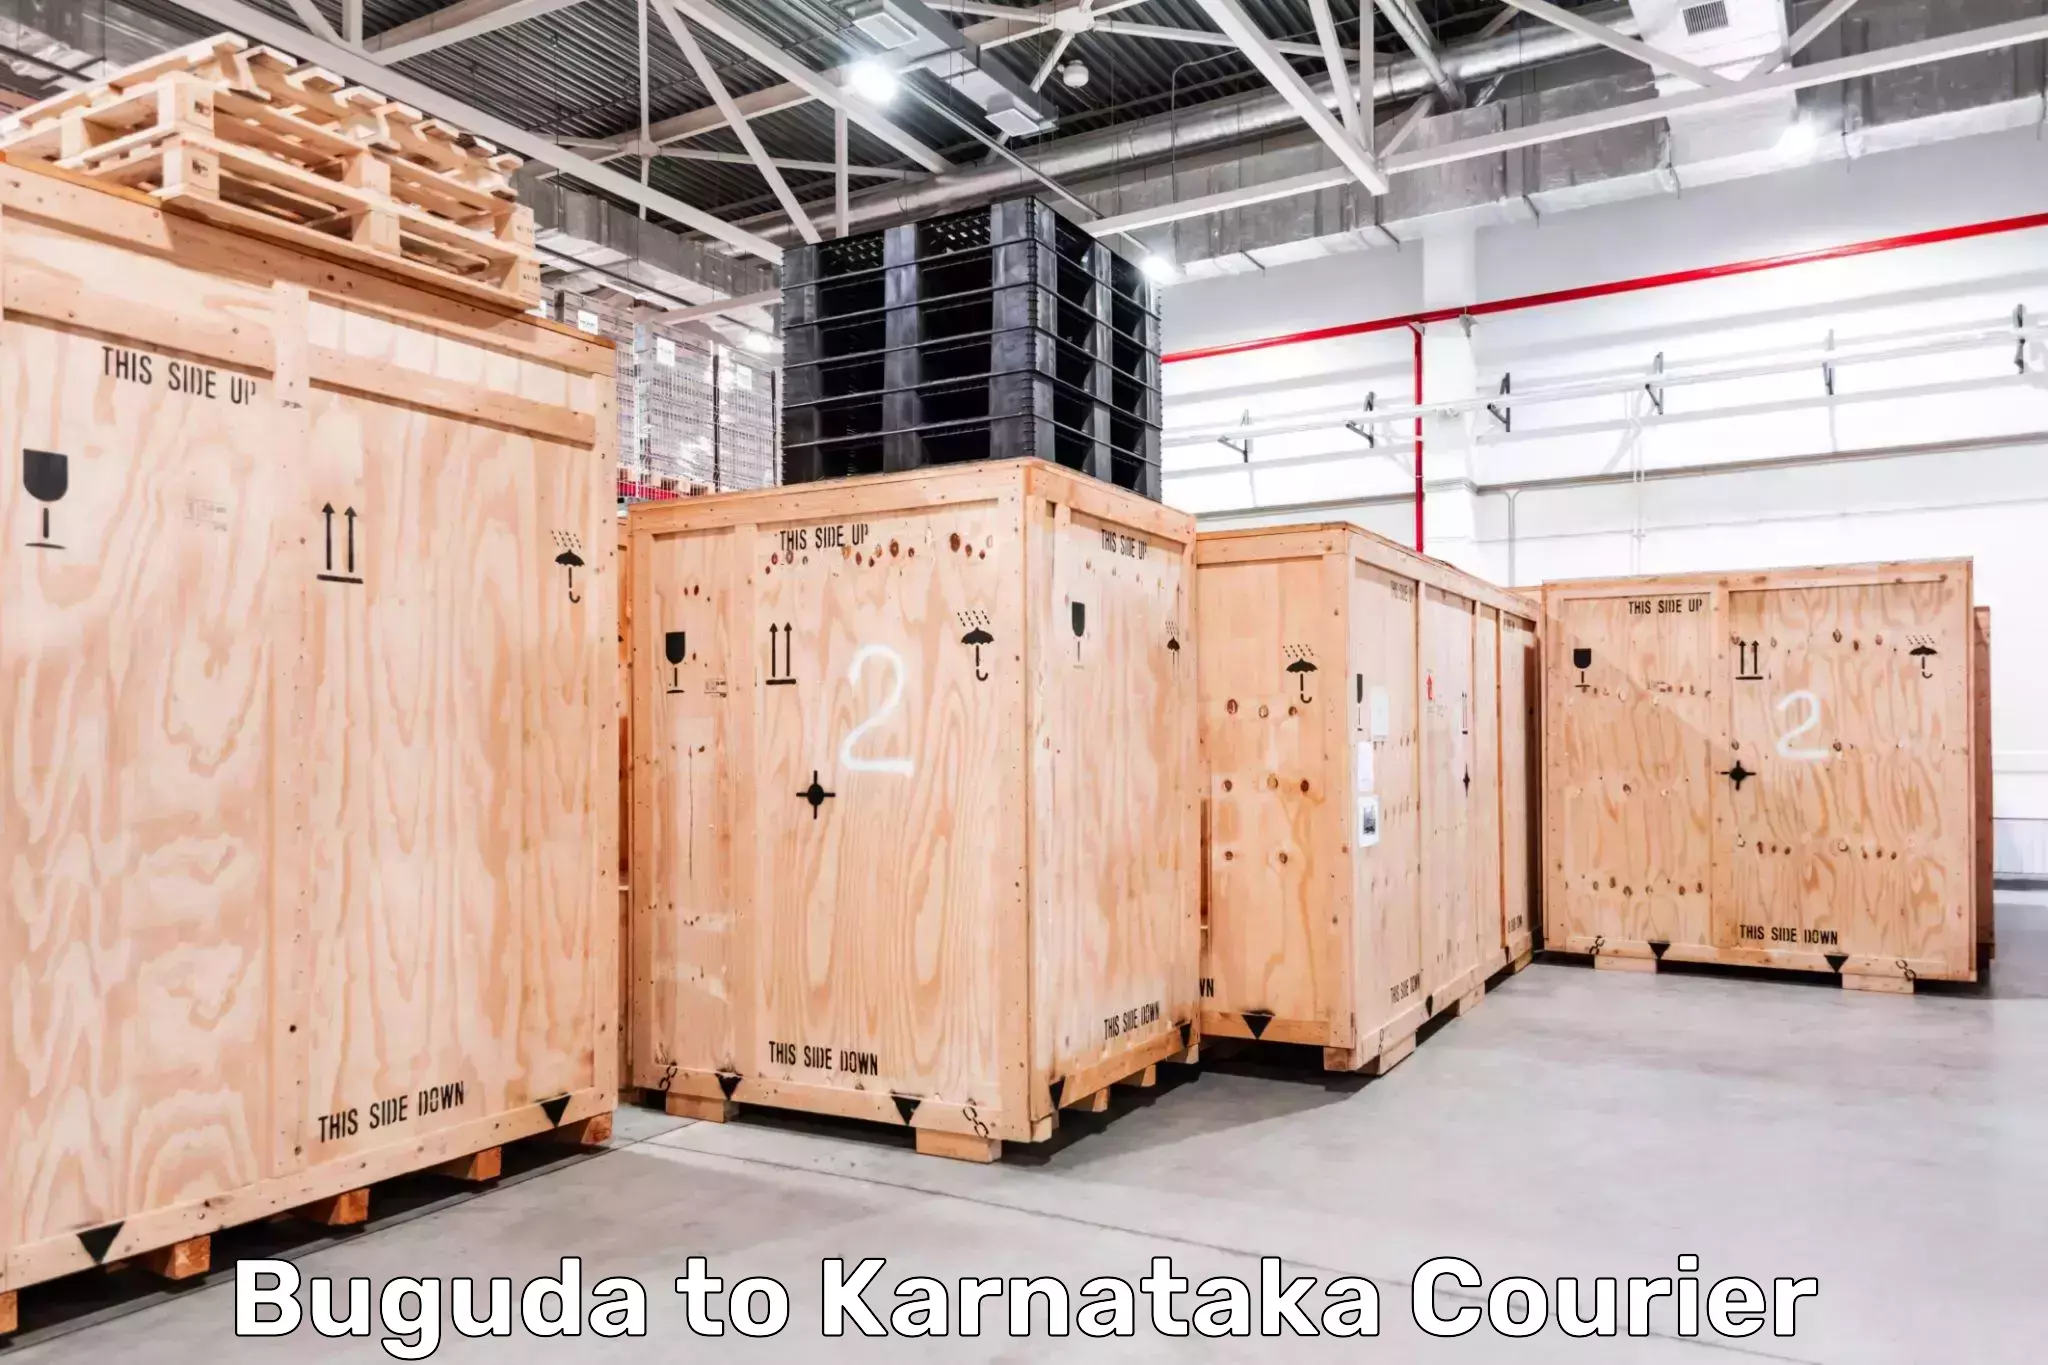 End-to-end delivery Buguda to Karnataka